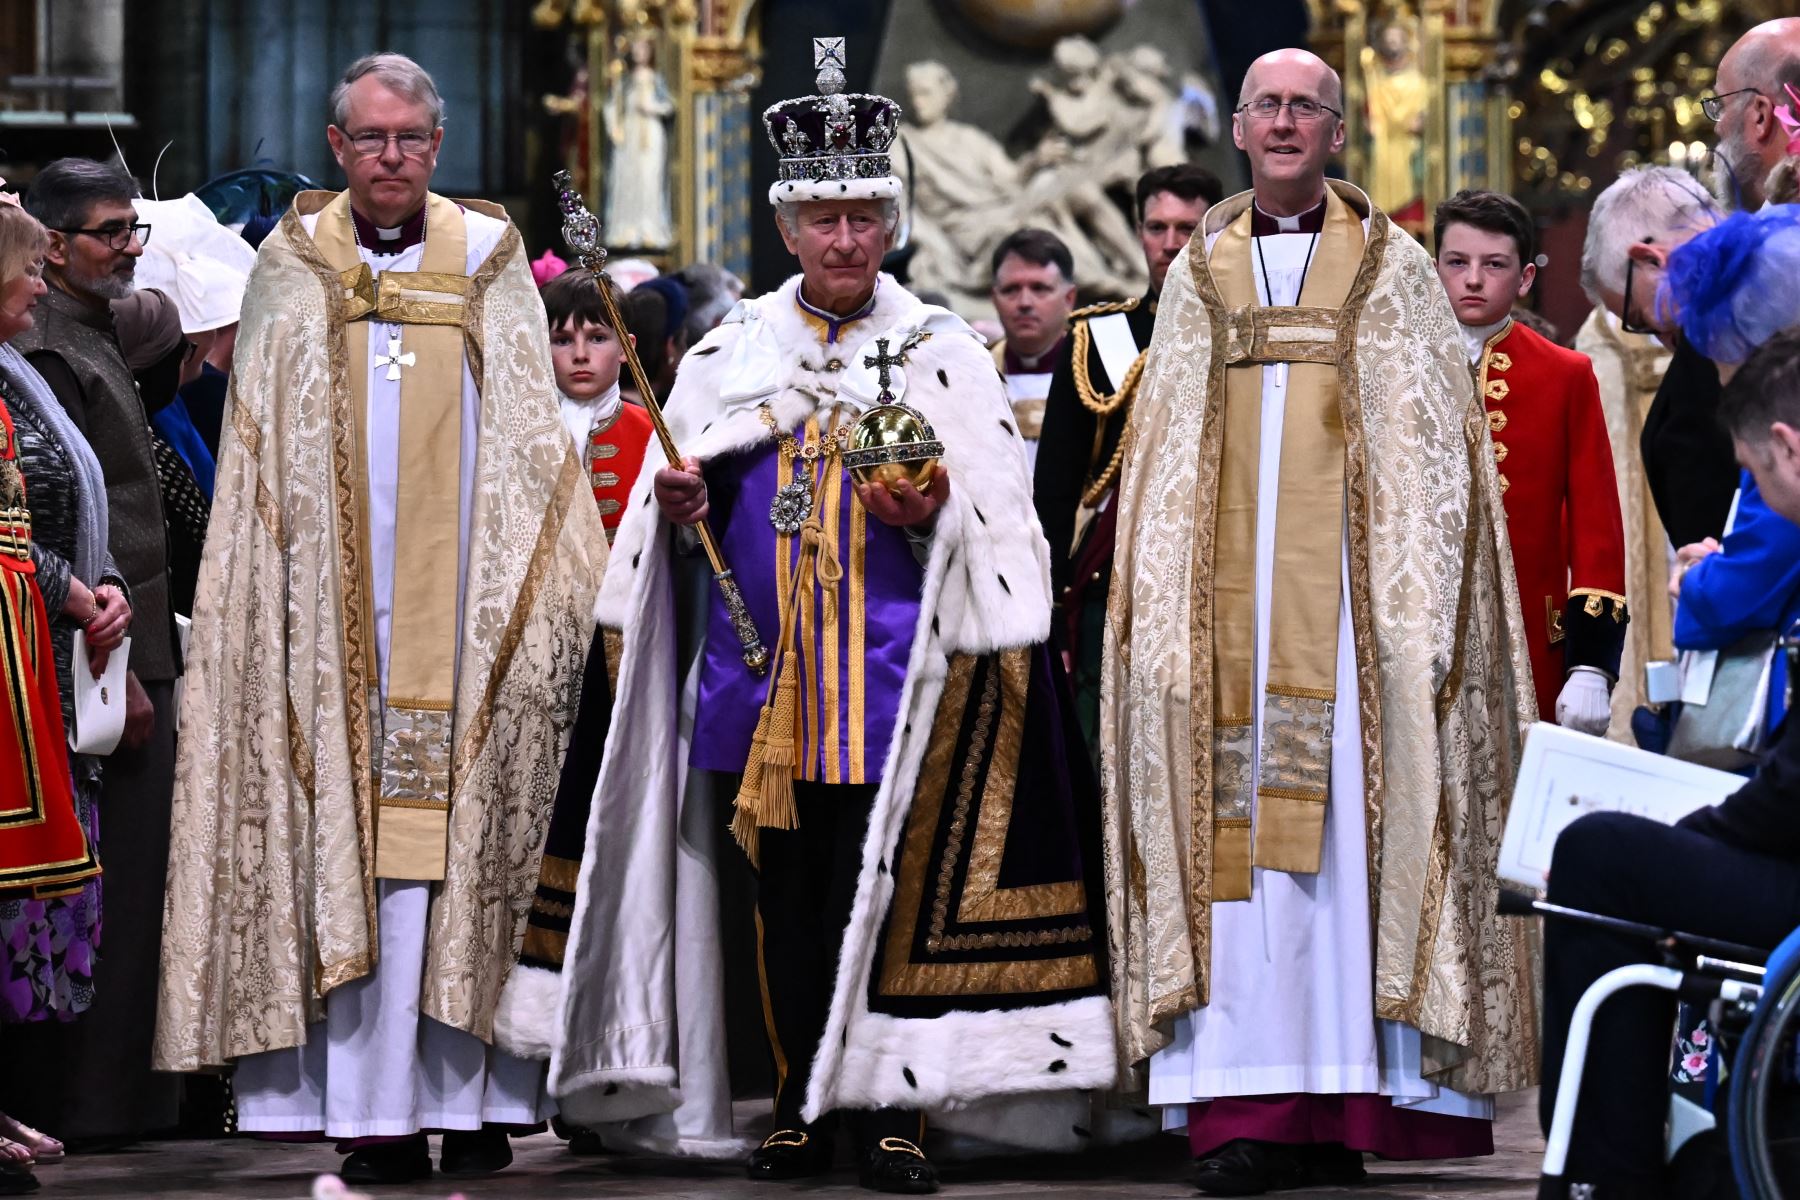 El rey Carlos III de Gran Bretaña con la corona del estado imperial que lleva el orbe y el cetro del soberano sale de la Abadía de Westminster después de las ceremonias de coronación en el centro de Londres el 6 de mayo de 2023. Foto: AFP